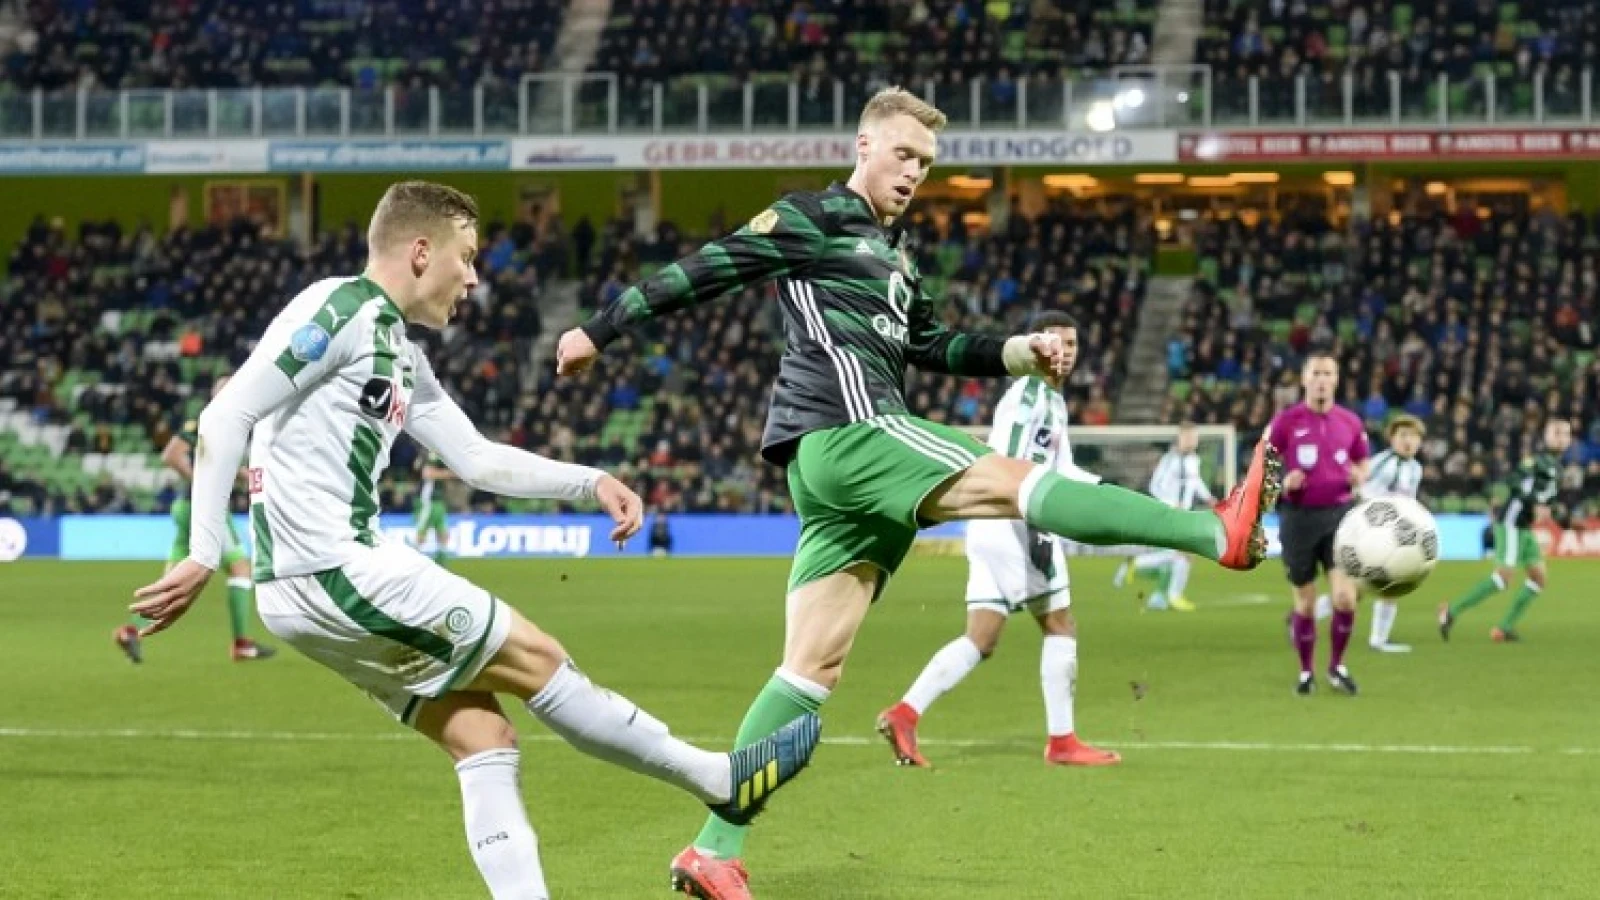 LIVE | FC Groningen - Feyenoord 0-2 | Einde wedstrijd